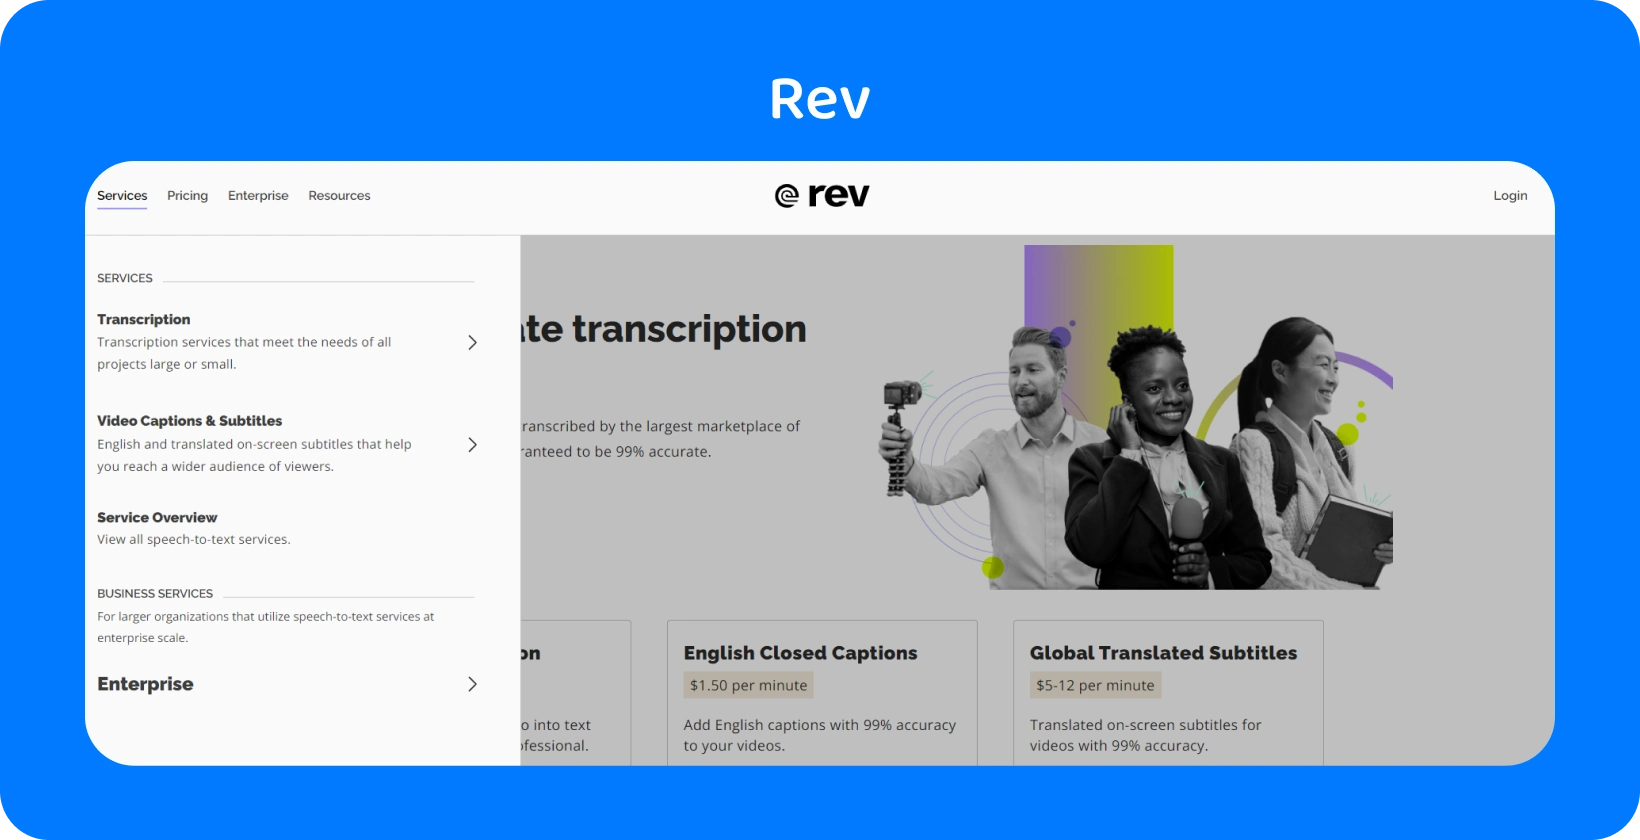 Rev mājas lapā tiek demonstrēti transkripcijas pakalpojumi ātrai un precīzai audio pārvēršanai tekstā profesionāļiem.